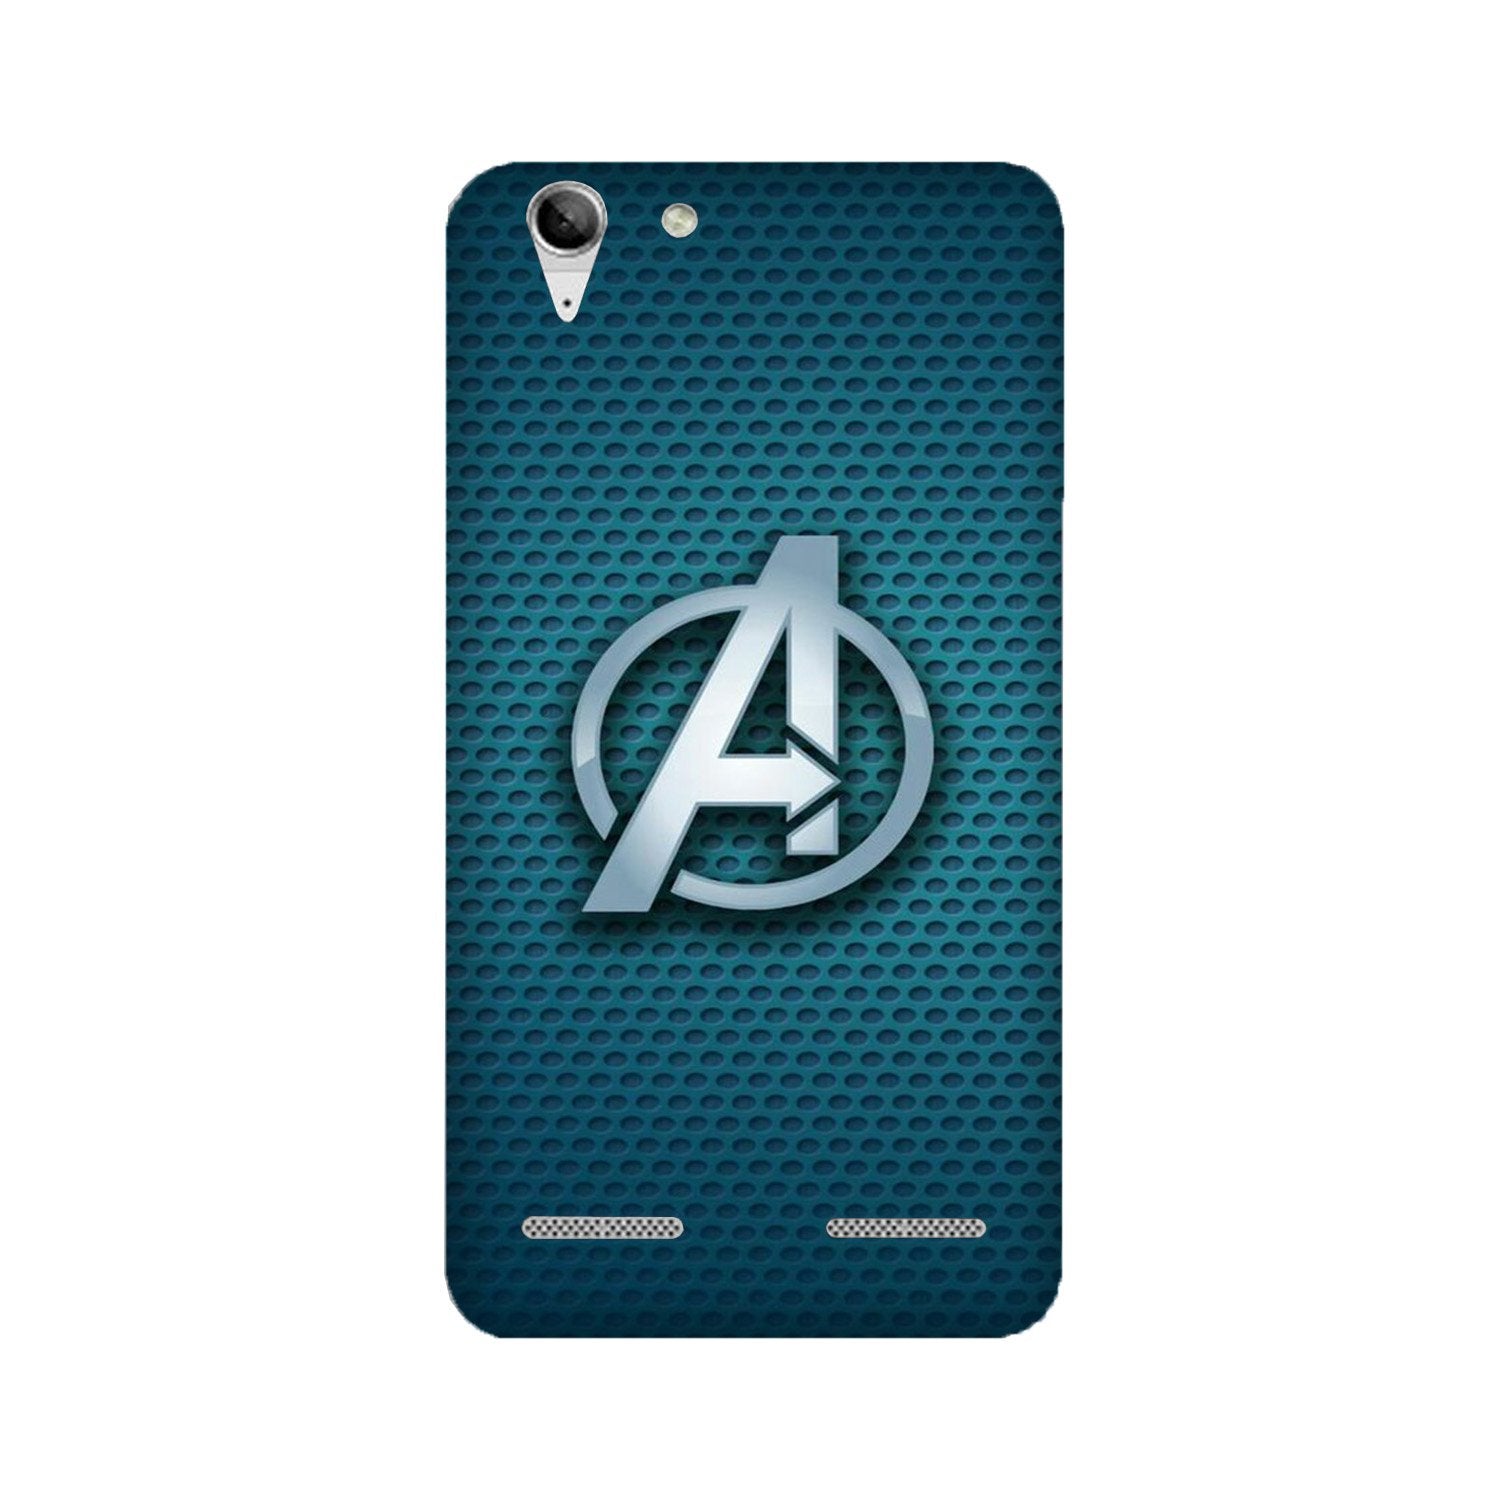 Avengers Case for Lenovo K5 / K5 Plus (Design No. 246)